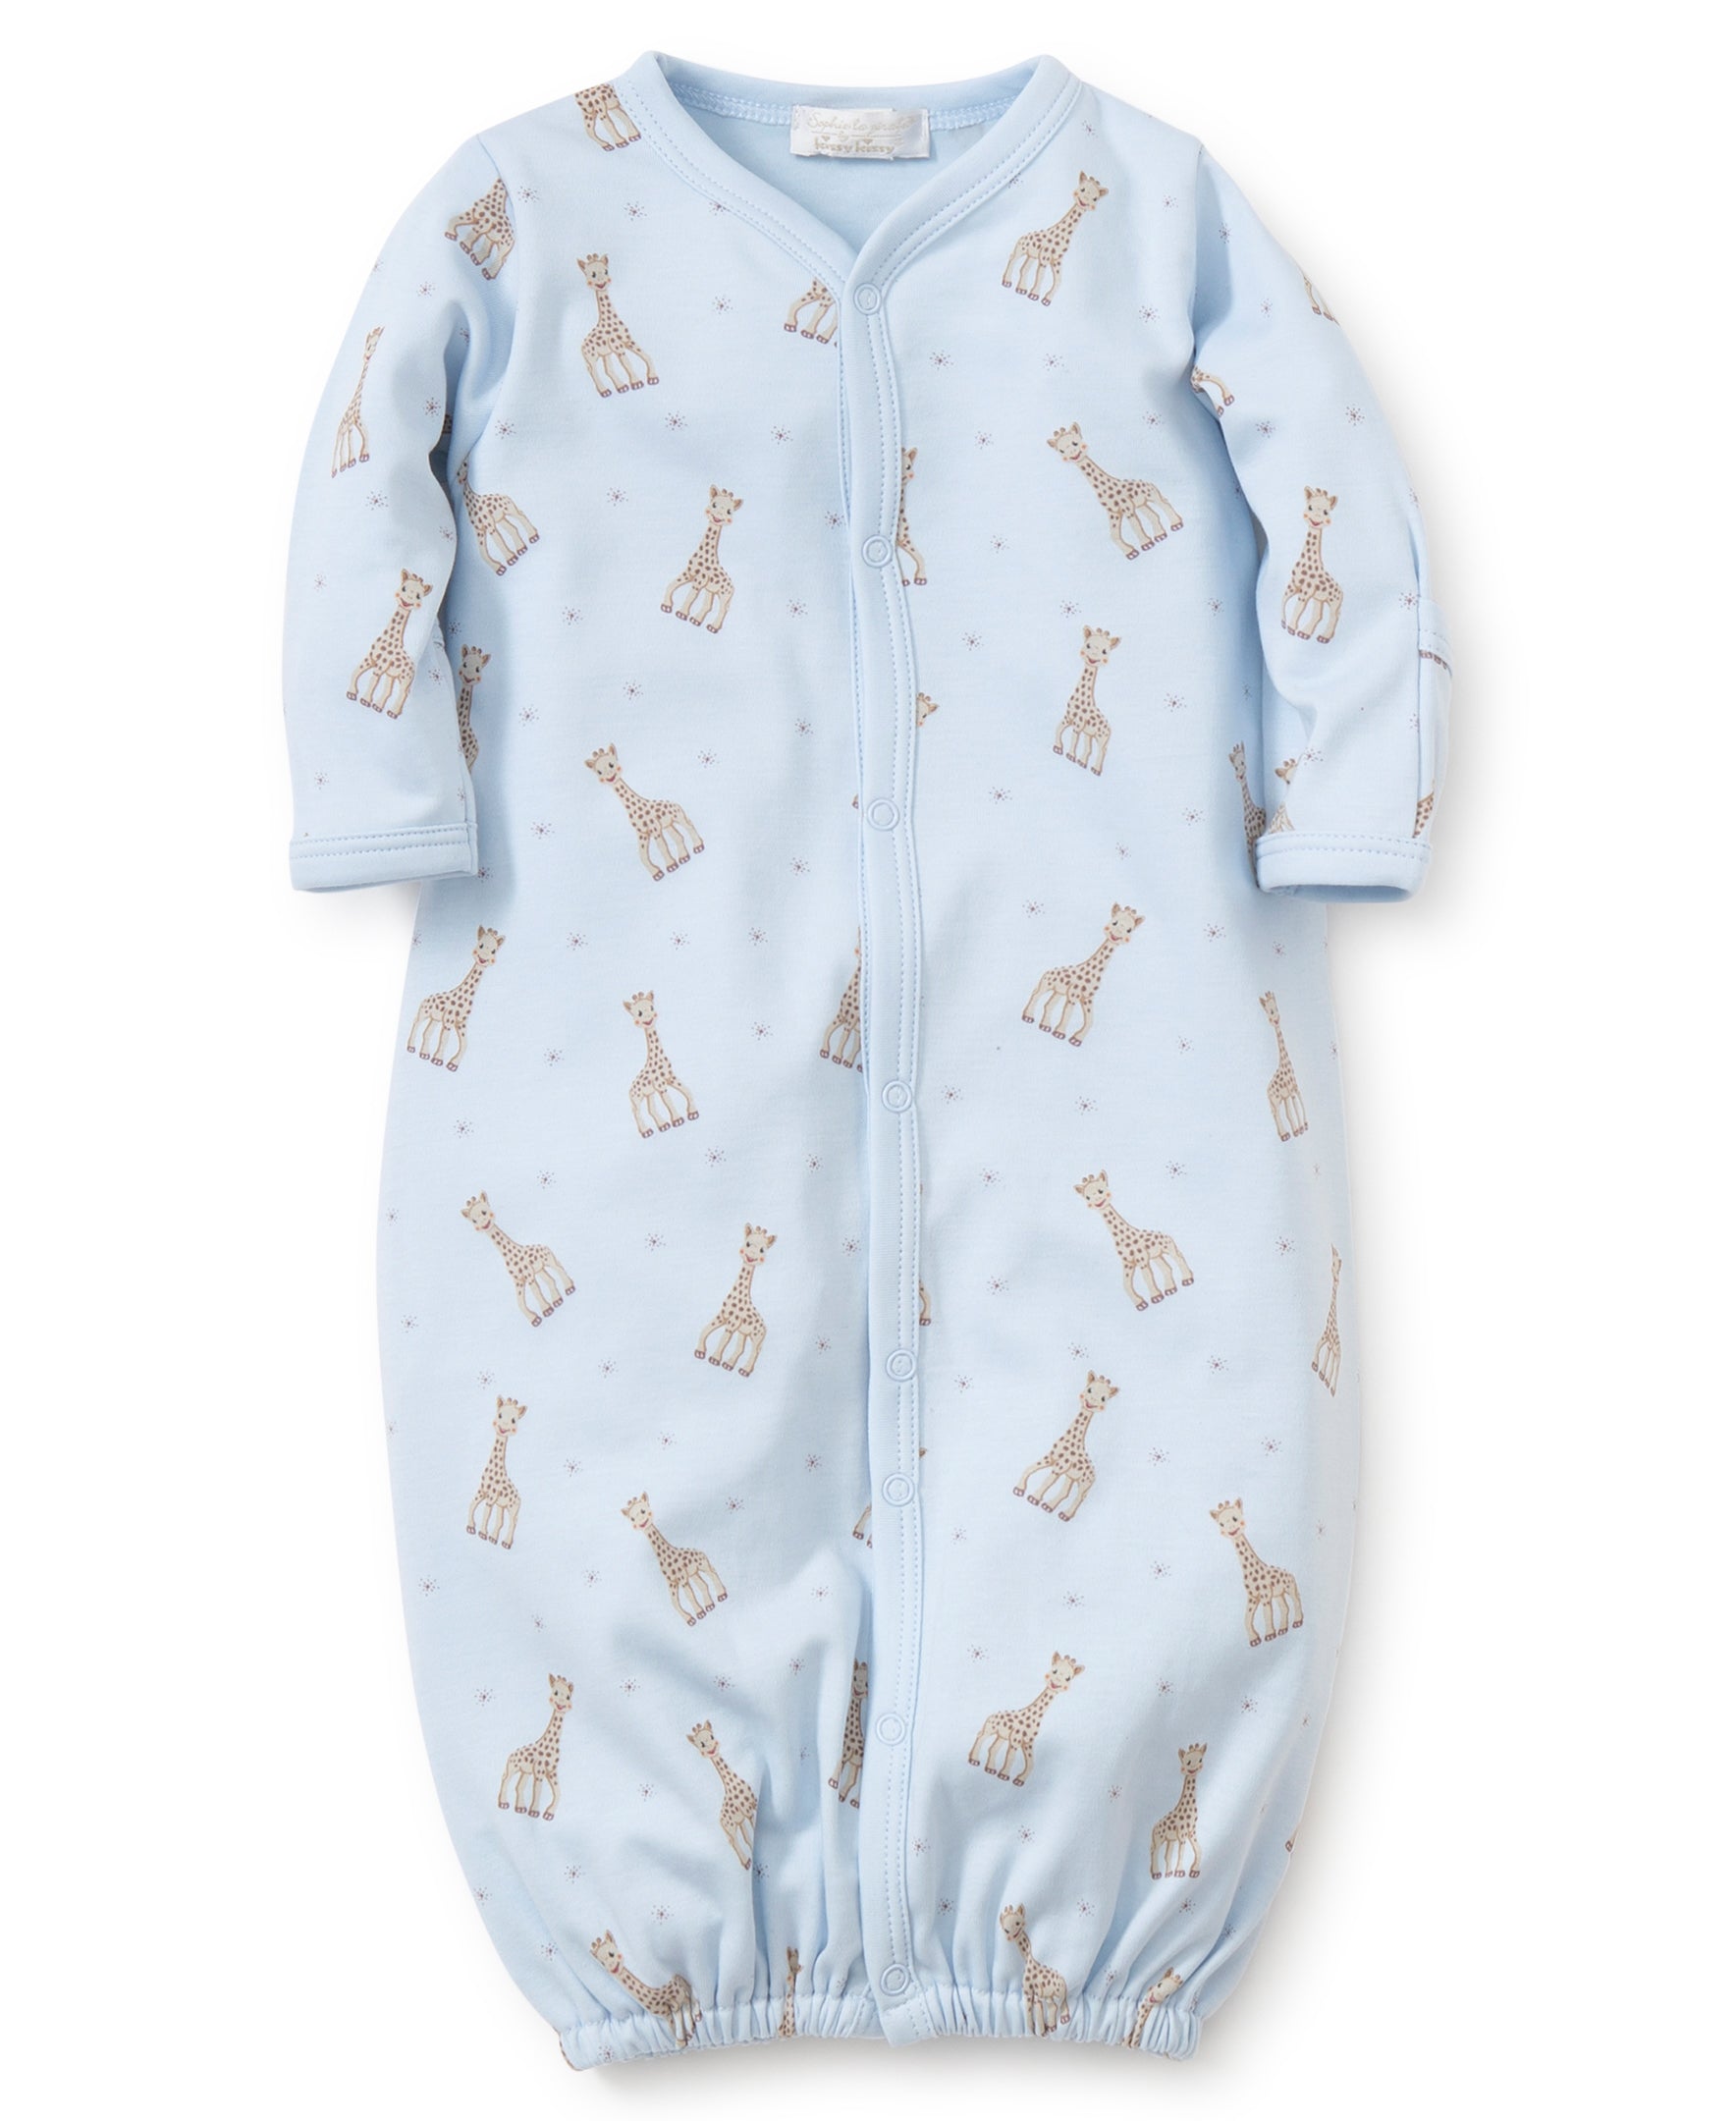 Sophie la girafe Blue Print Converter Gown - Kissy Kissy